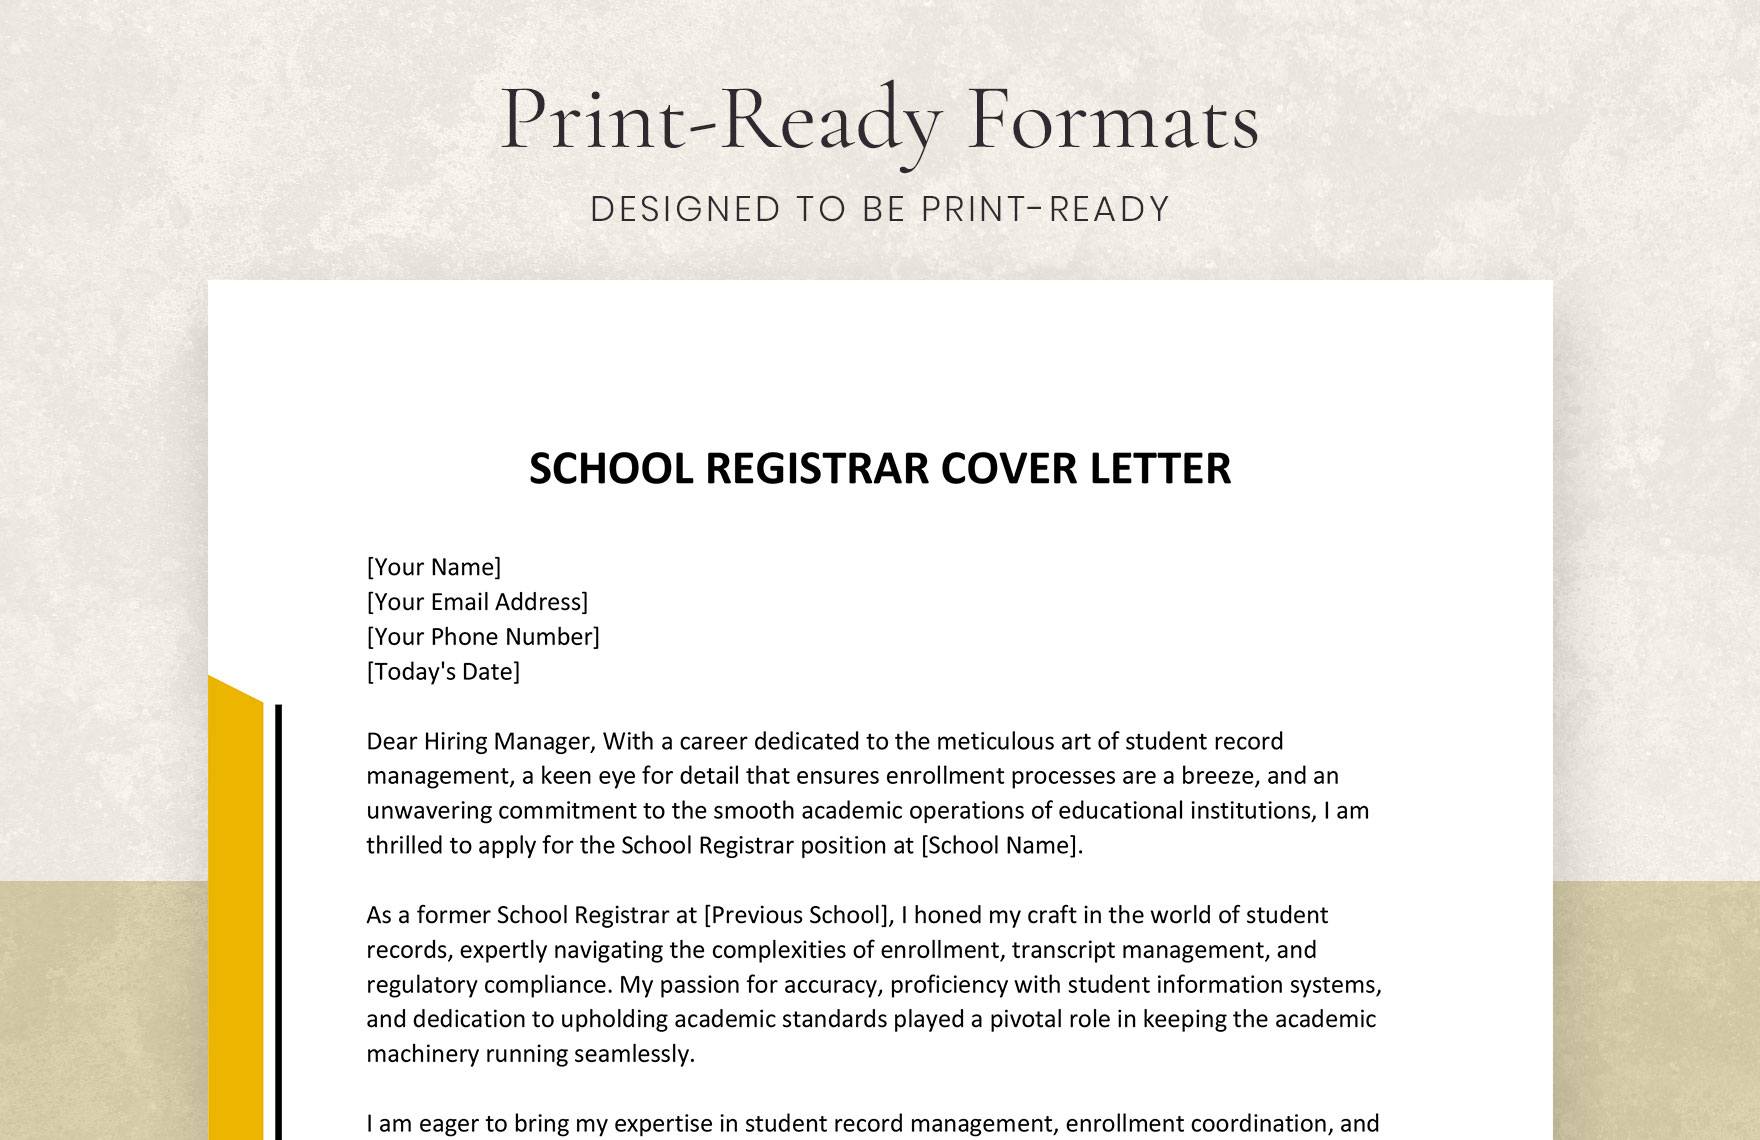 School Registrar Cover Letter